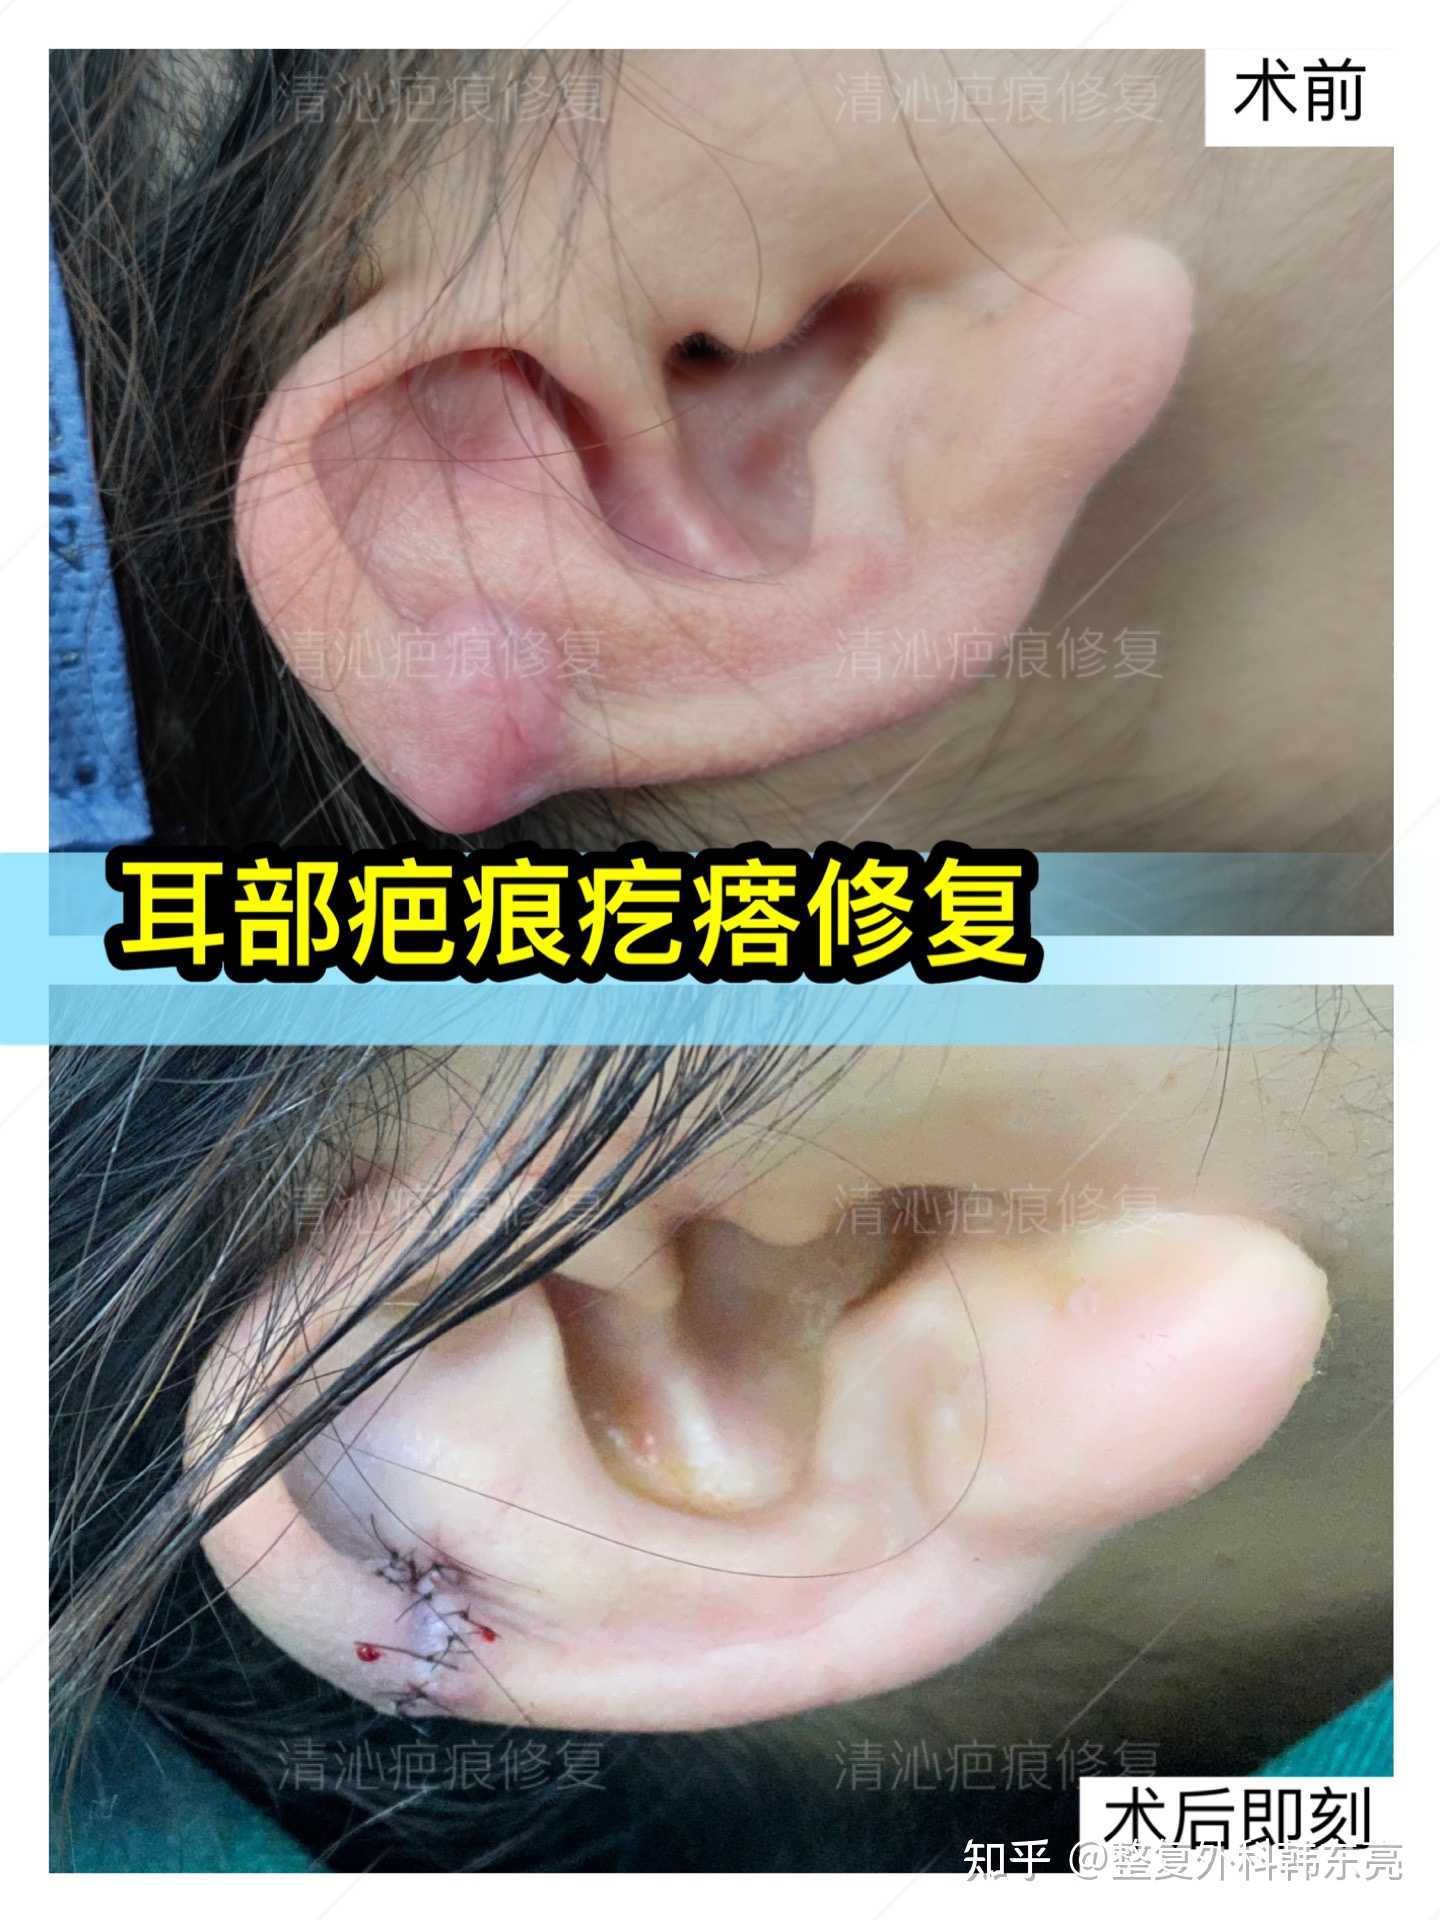 疤痕疙瘩修复临床上顾客最为关心的问题之一就是经过手术后我的耳朵